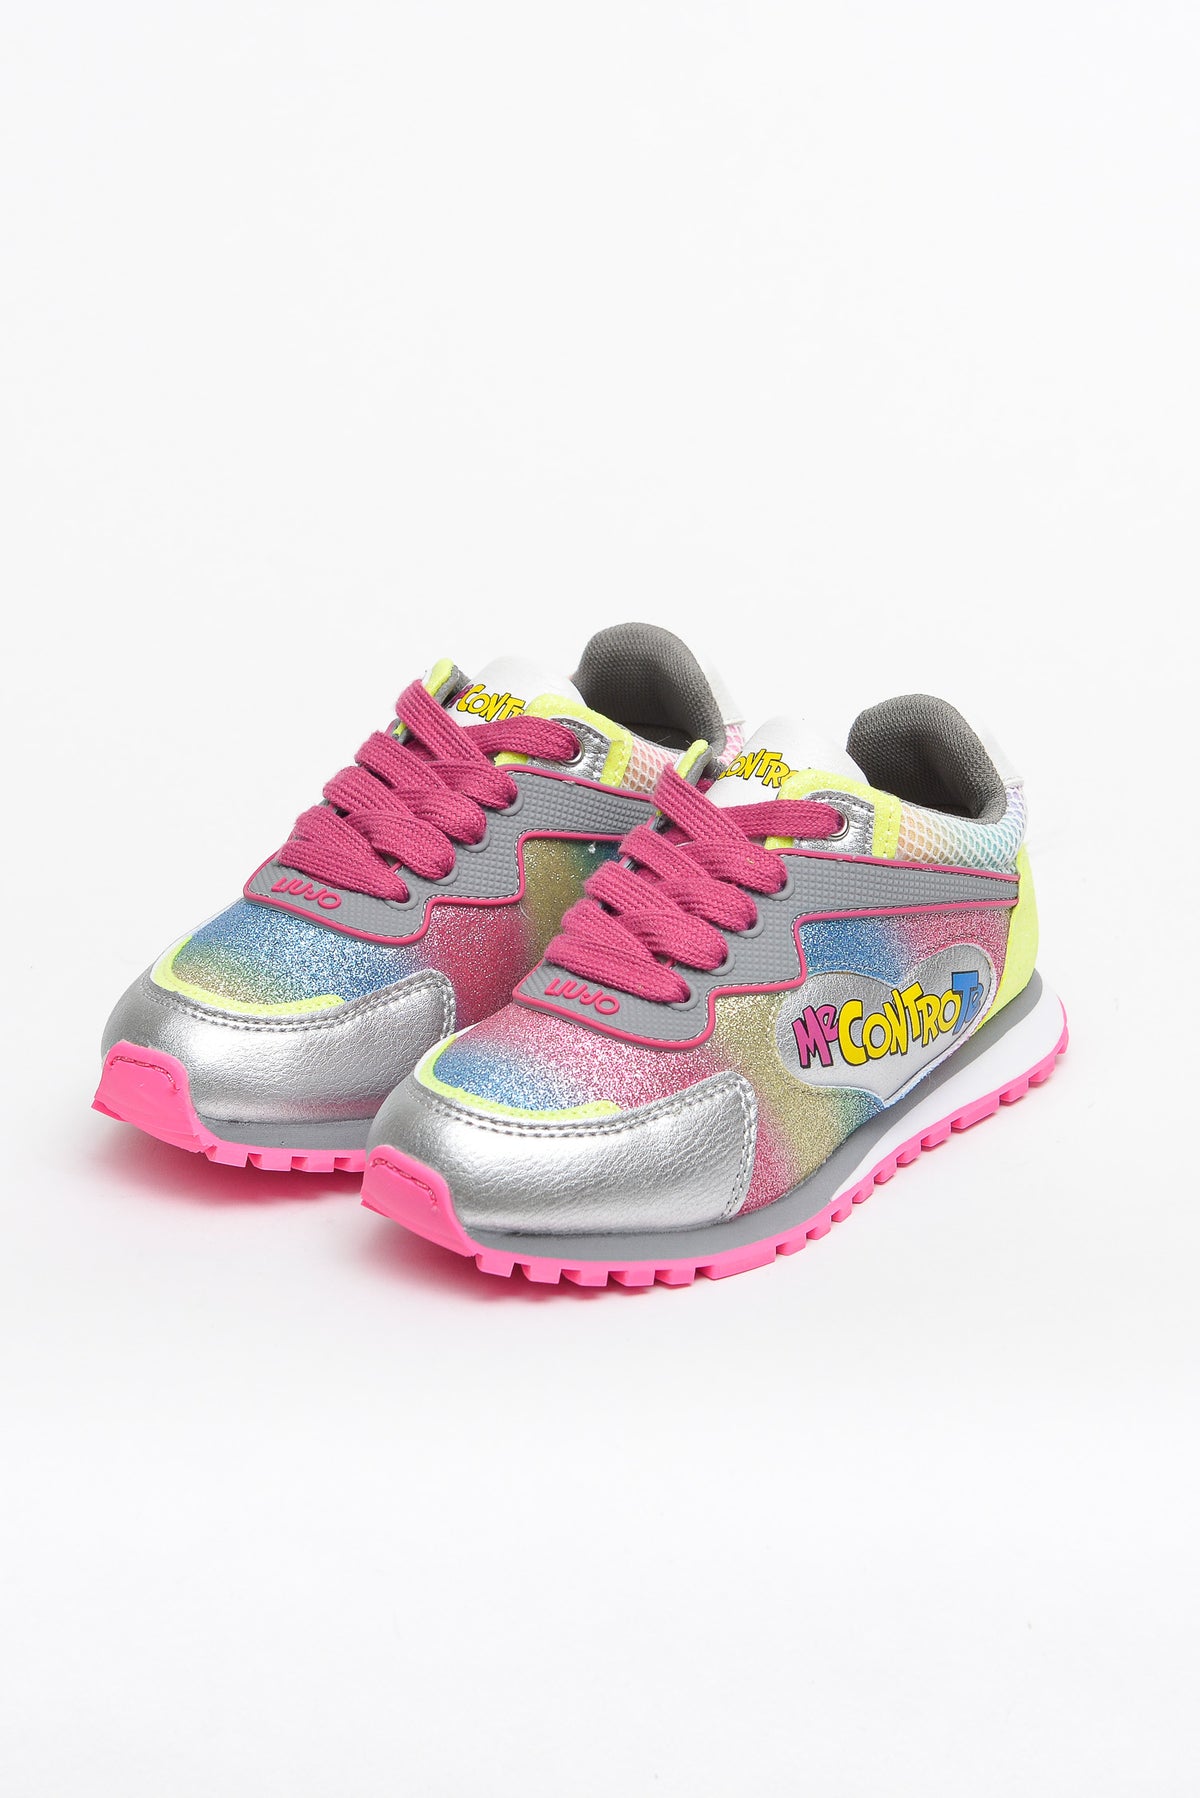 Liu Jo Shoes Sneaker Lacci Multic.+pochette Multicolore Bambina - 3